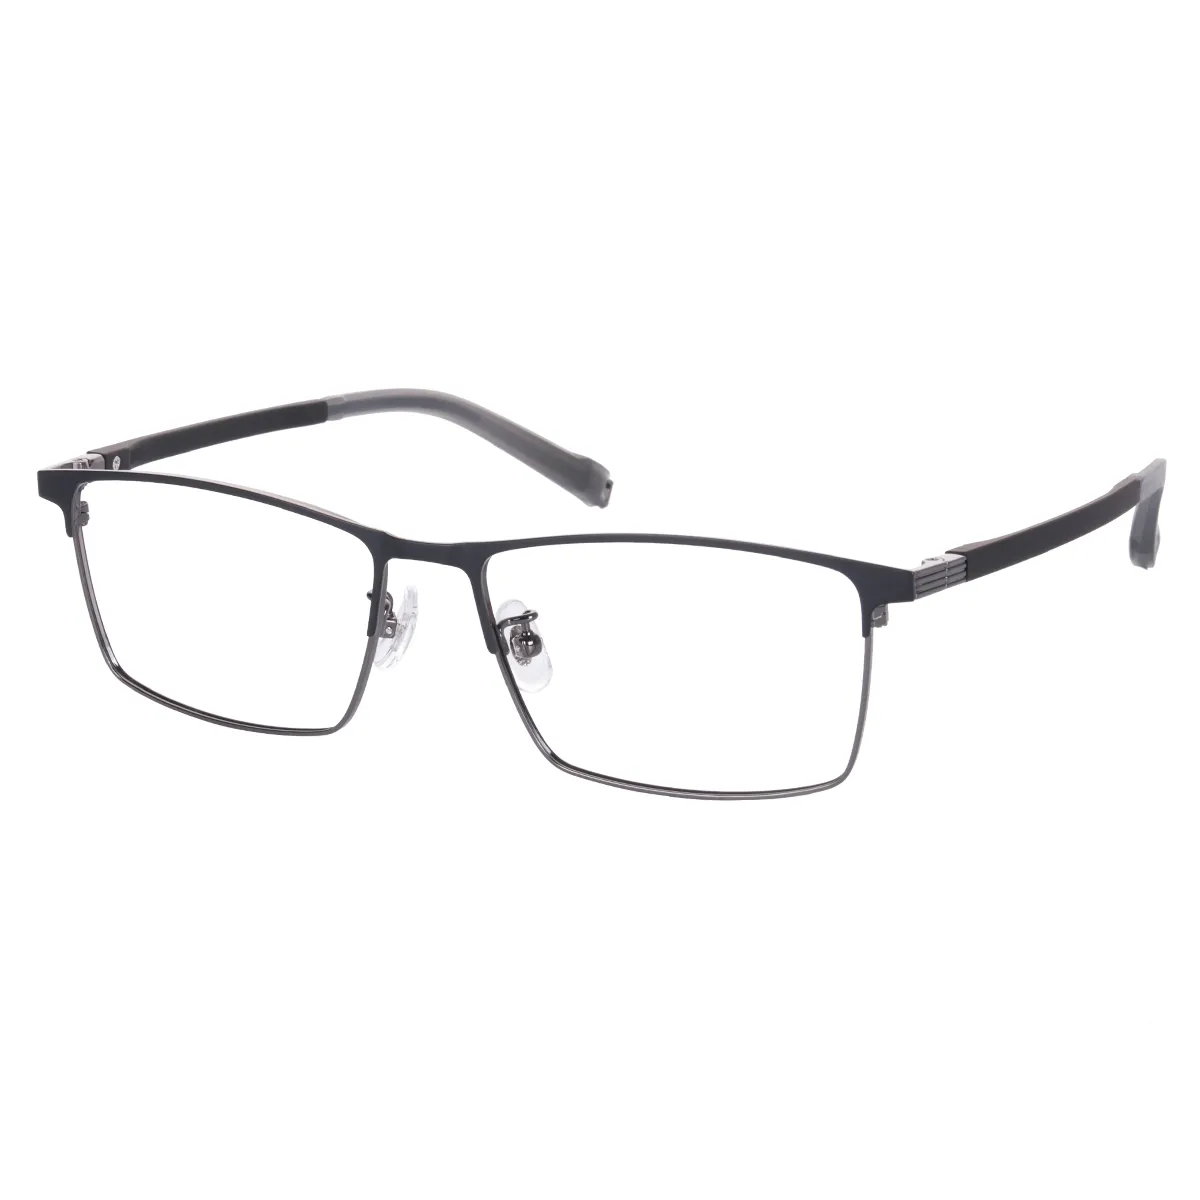 Antonio - Square Gray Glasses for Men